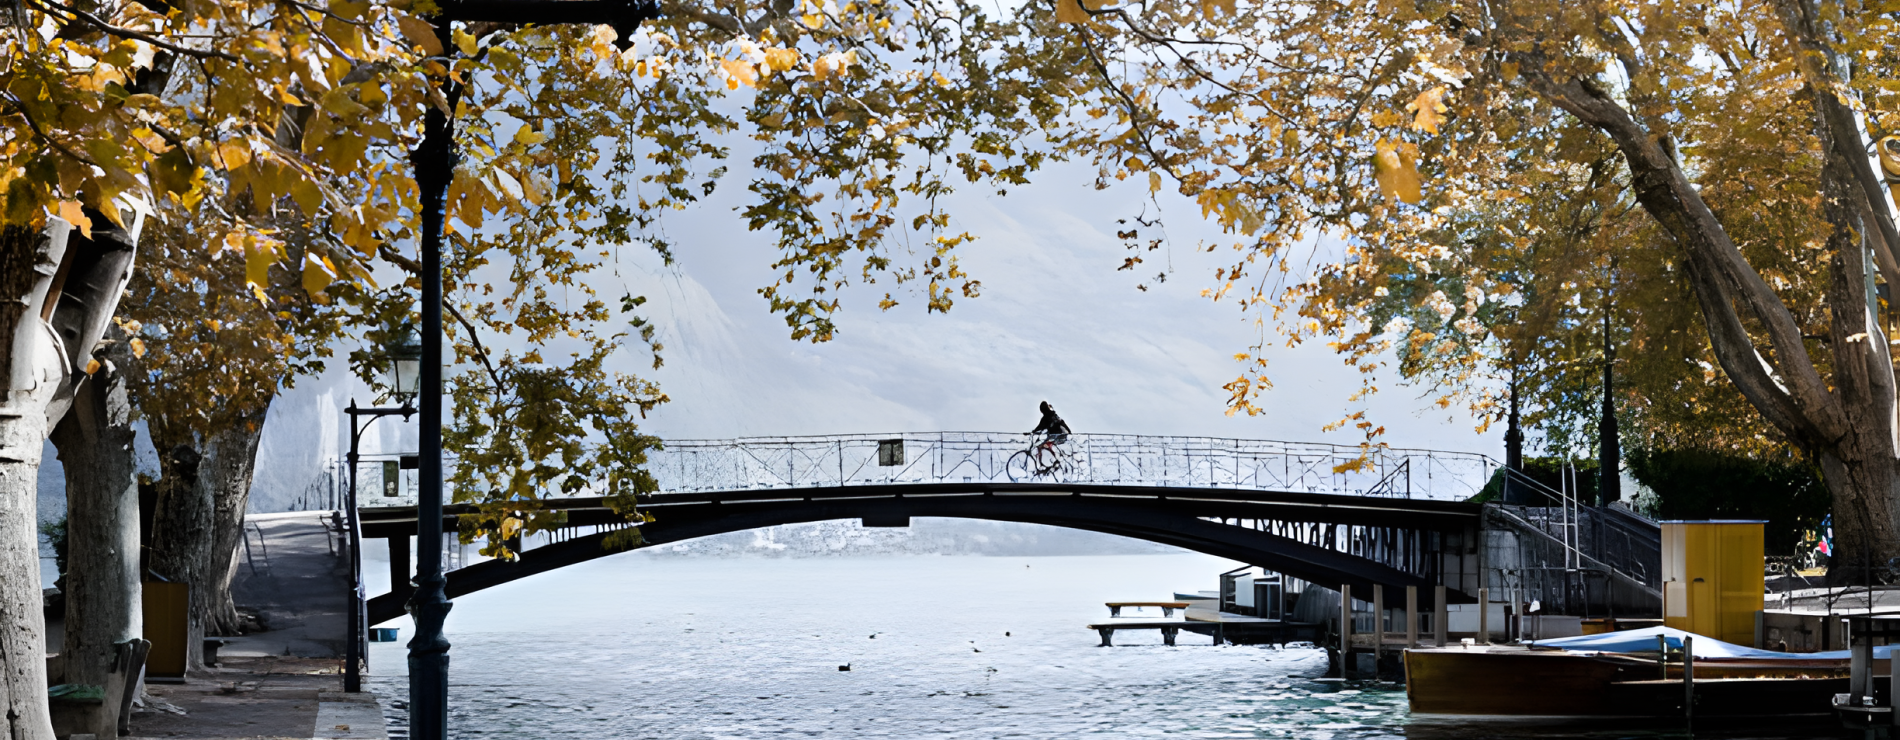 Annecy lake bridge